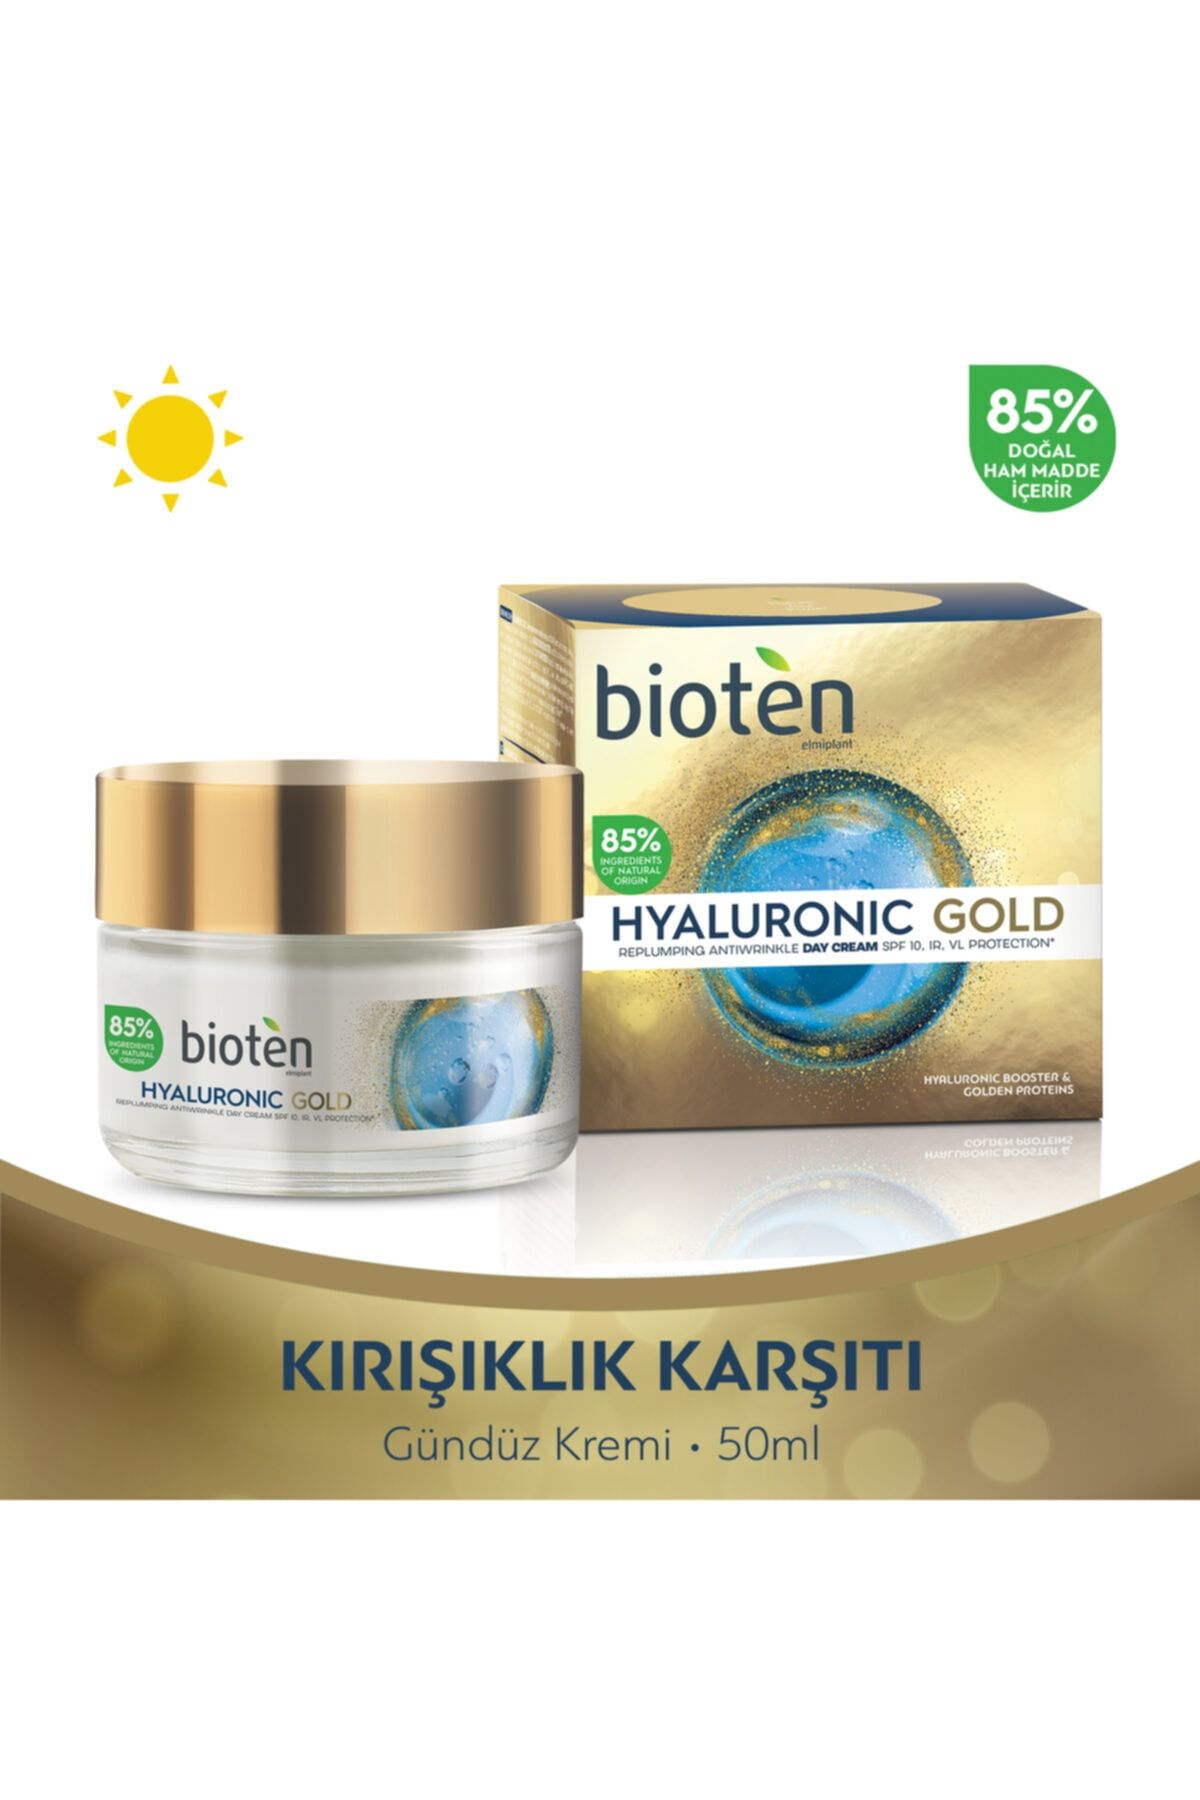 Bioten Hyaluronic Gold Kırışıklık Karşıtı Gündüz Kremi Spf10 50 Ml